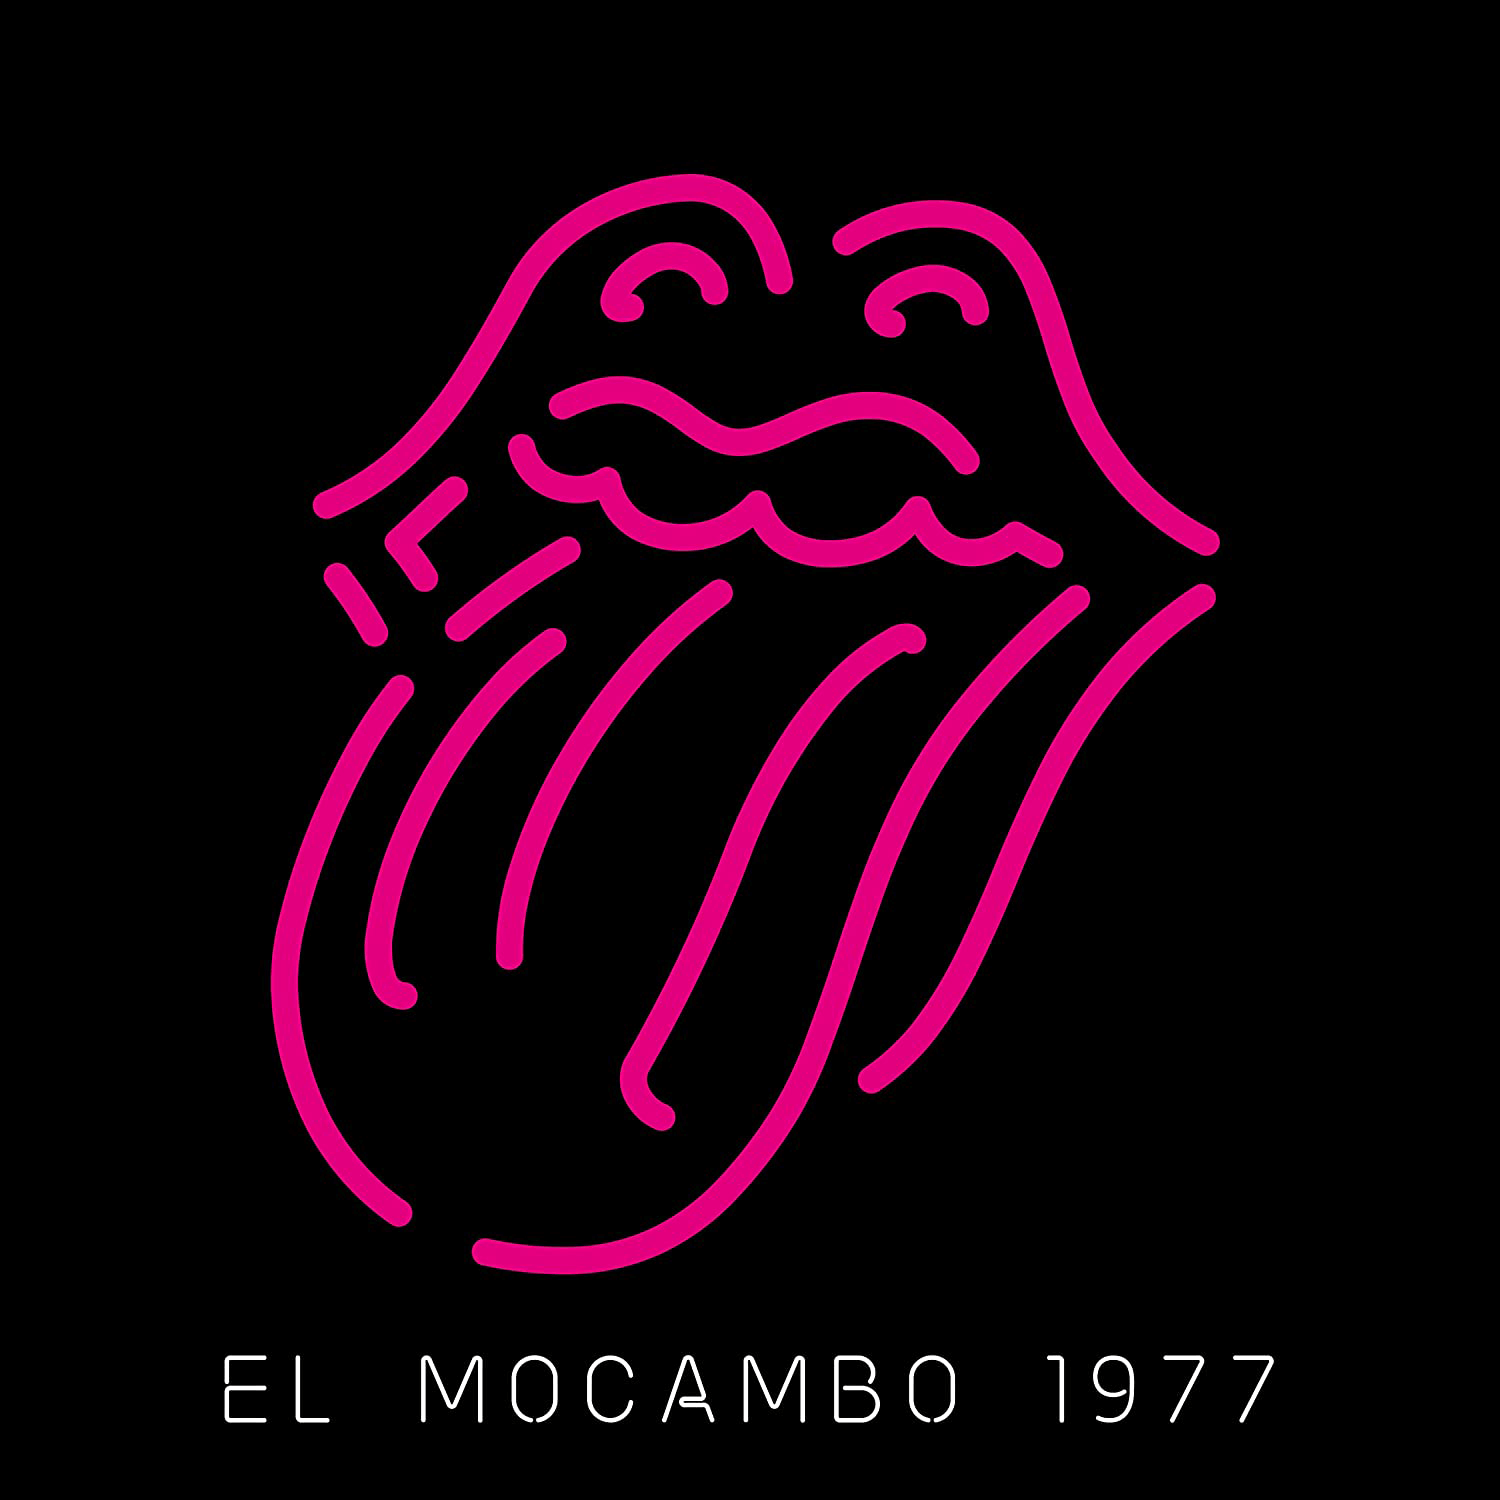 The Rolling Stones - El Mocambo 1977